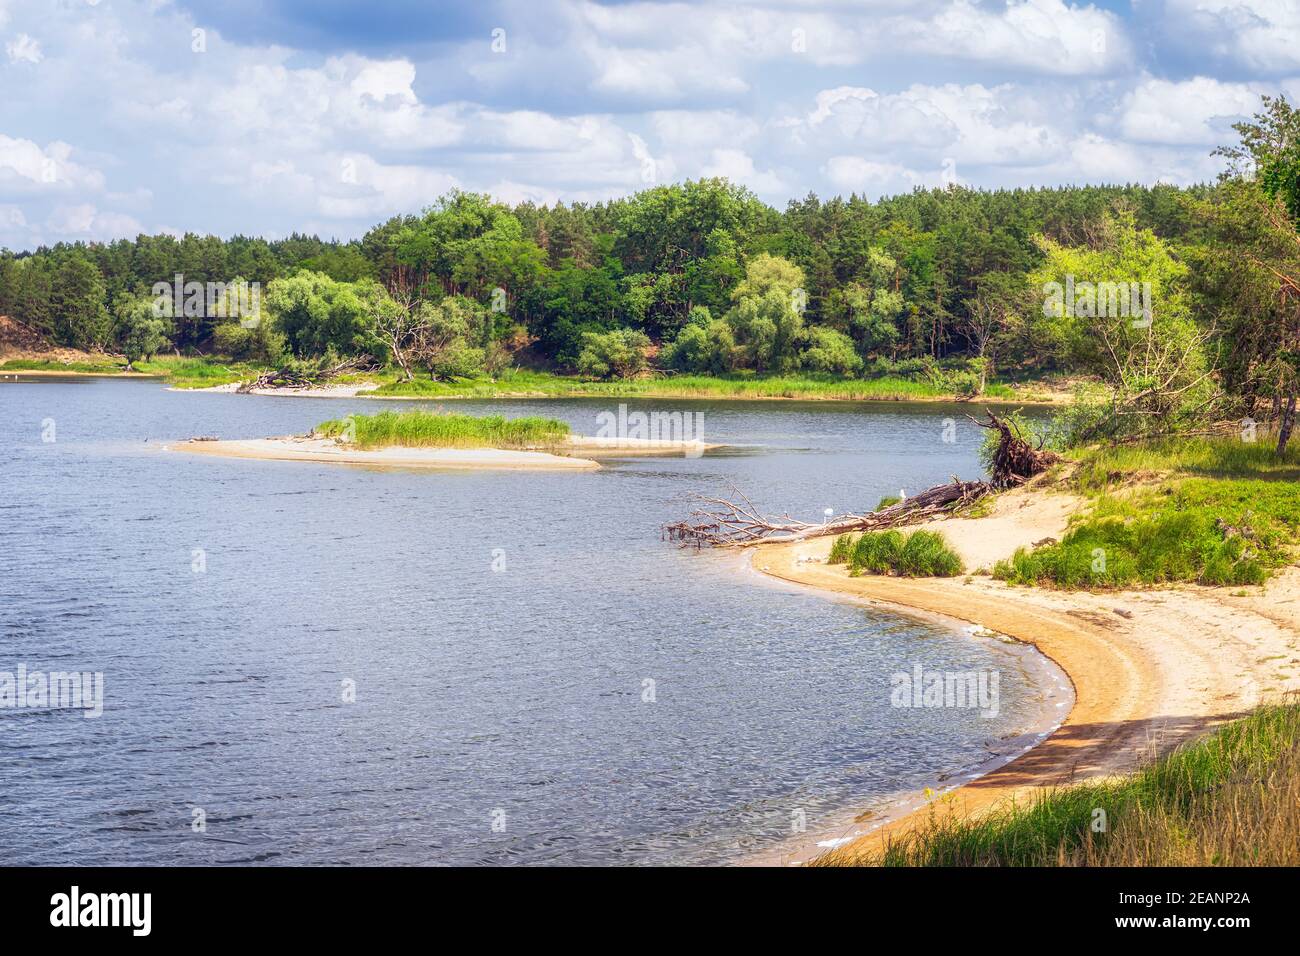 Piccola spiaggia di sabbia con isola su un lago sonato da boschi di betulla e pino. Foto Stock